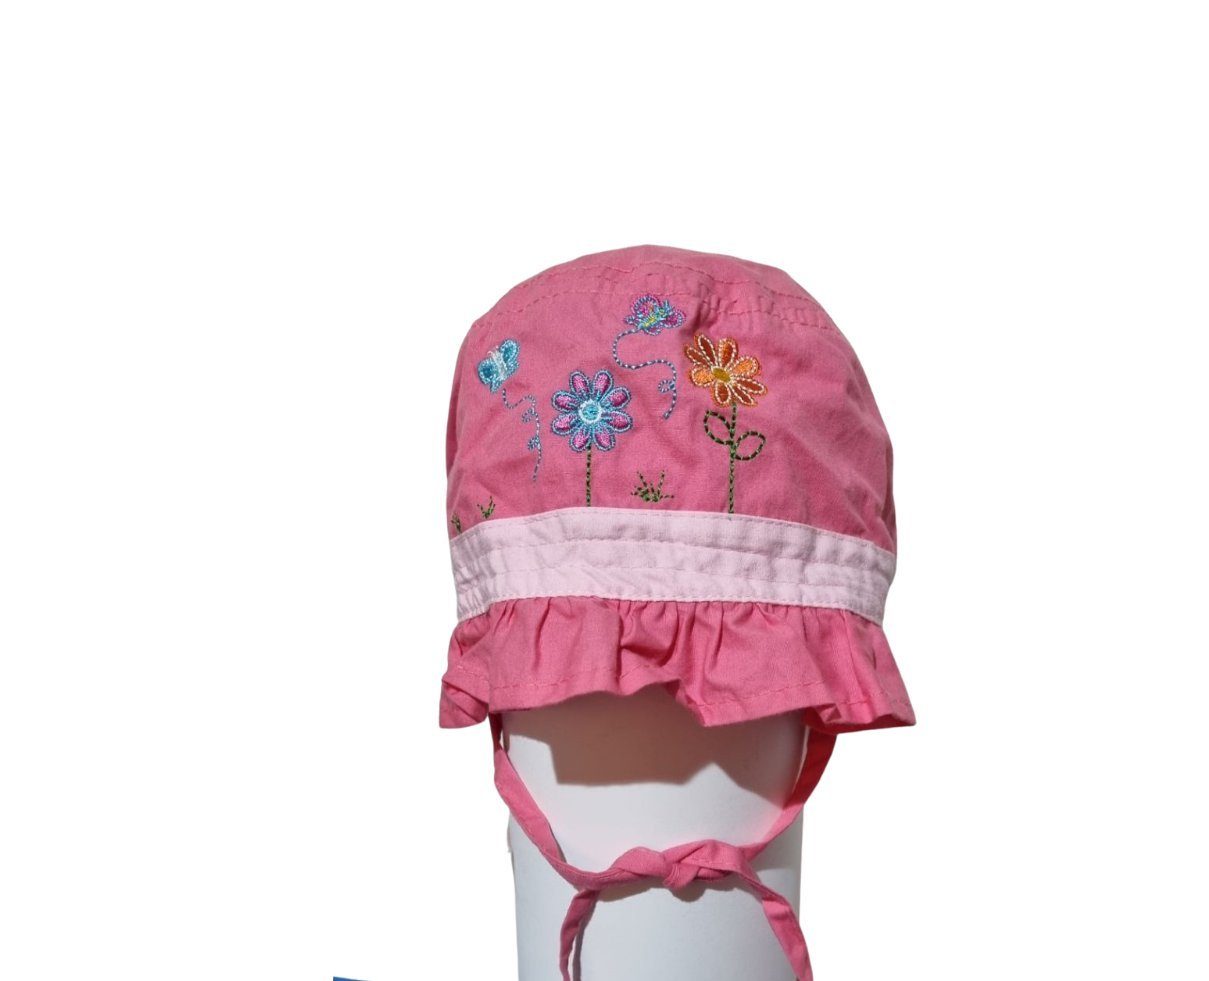 Bellezza Schirmmütze Hut 23-46 Mädchen rosa mit Muster - Größe 45